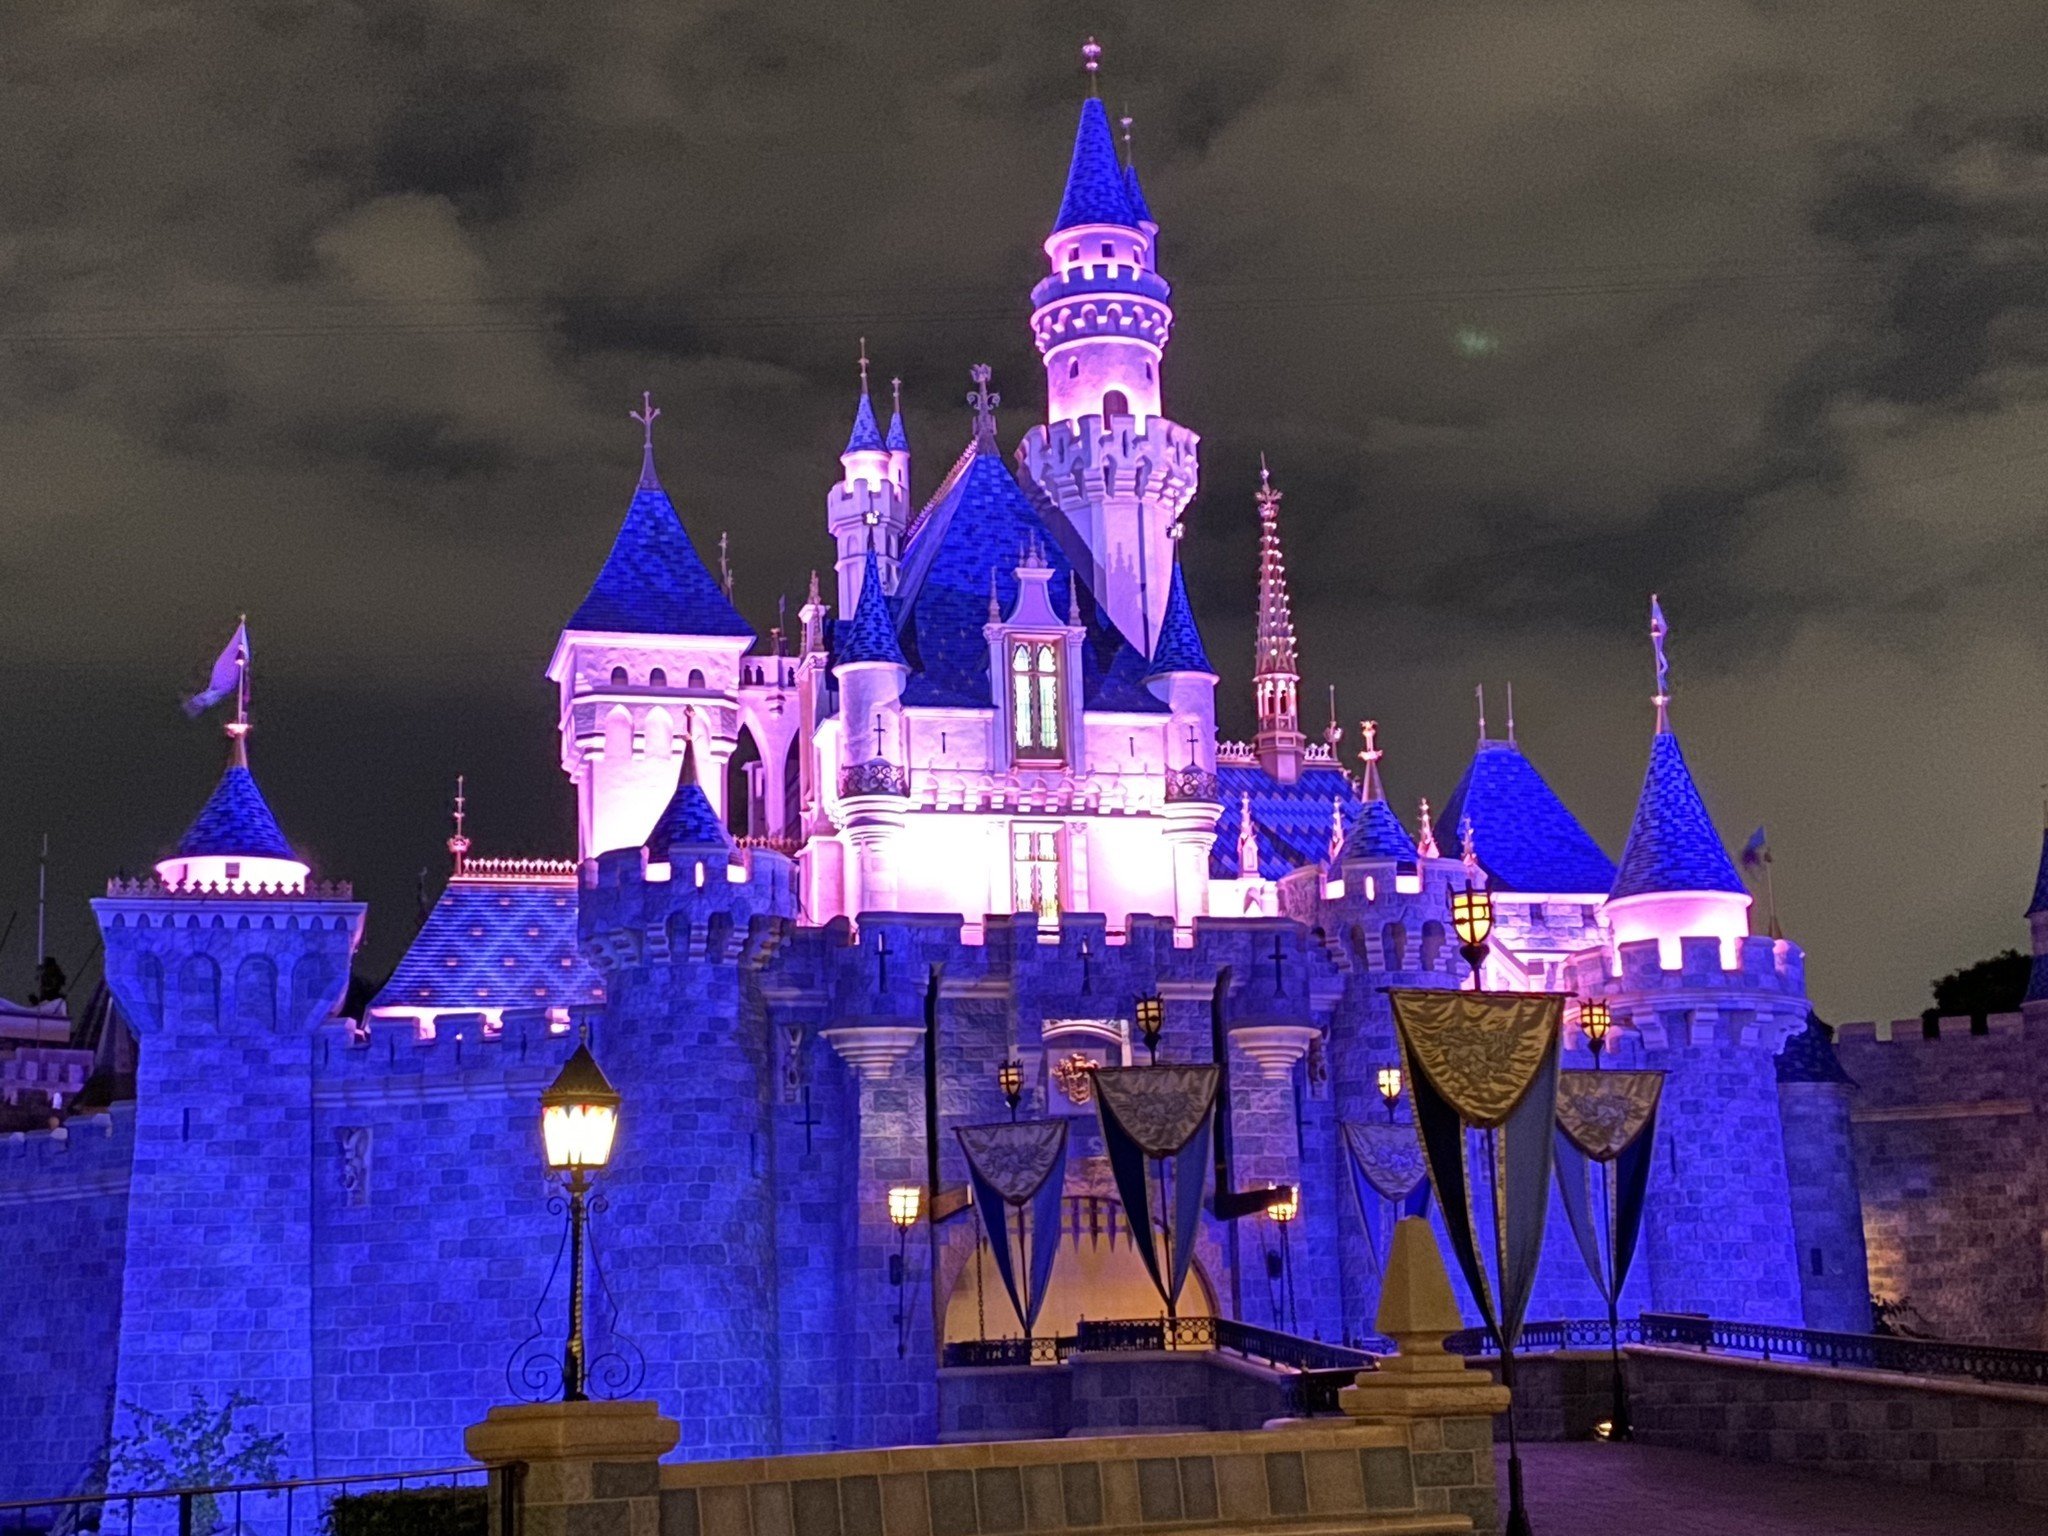 Sleeping Beauty's Castle night mode